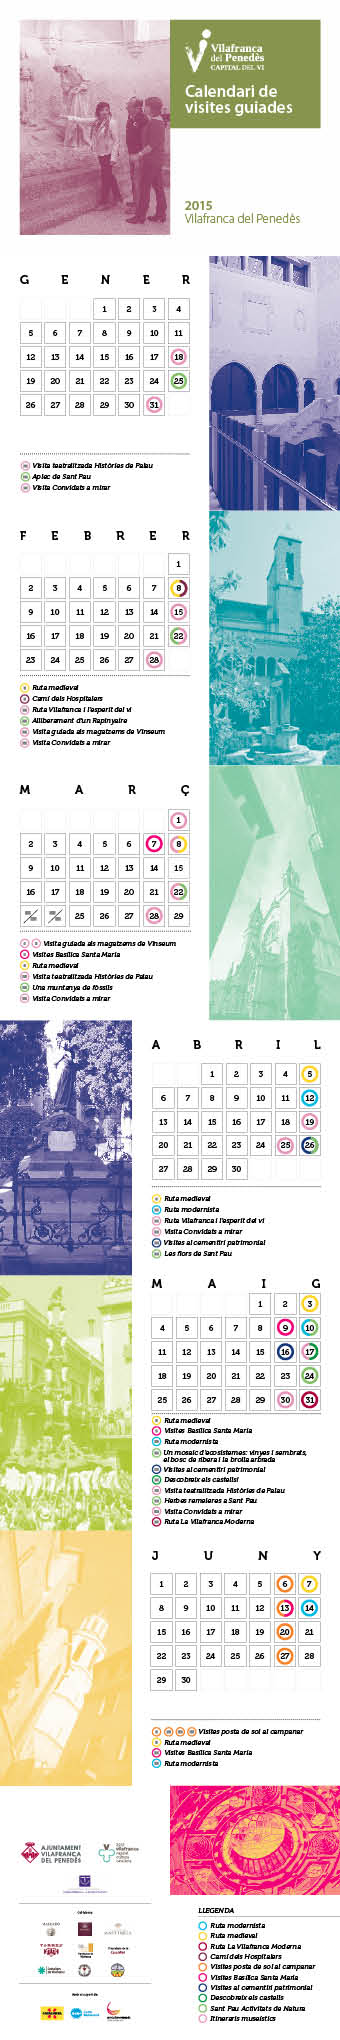 calendari visites guiades